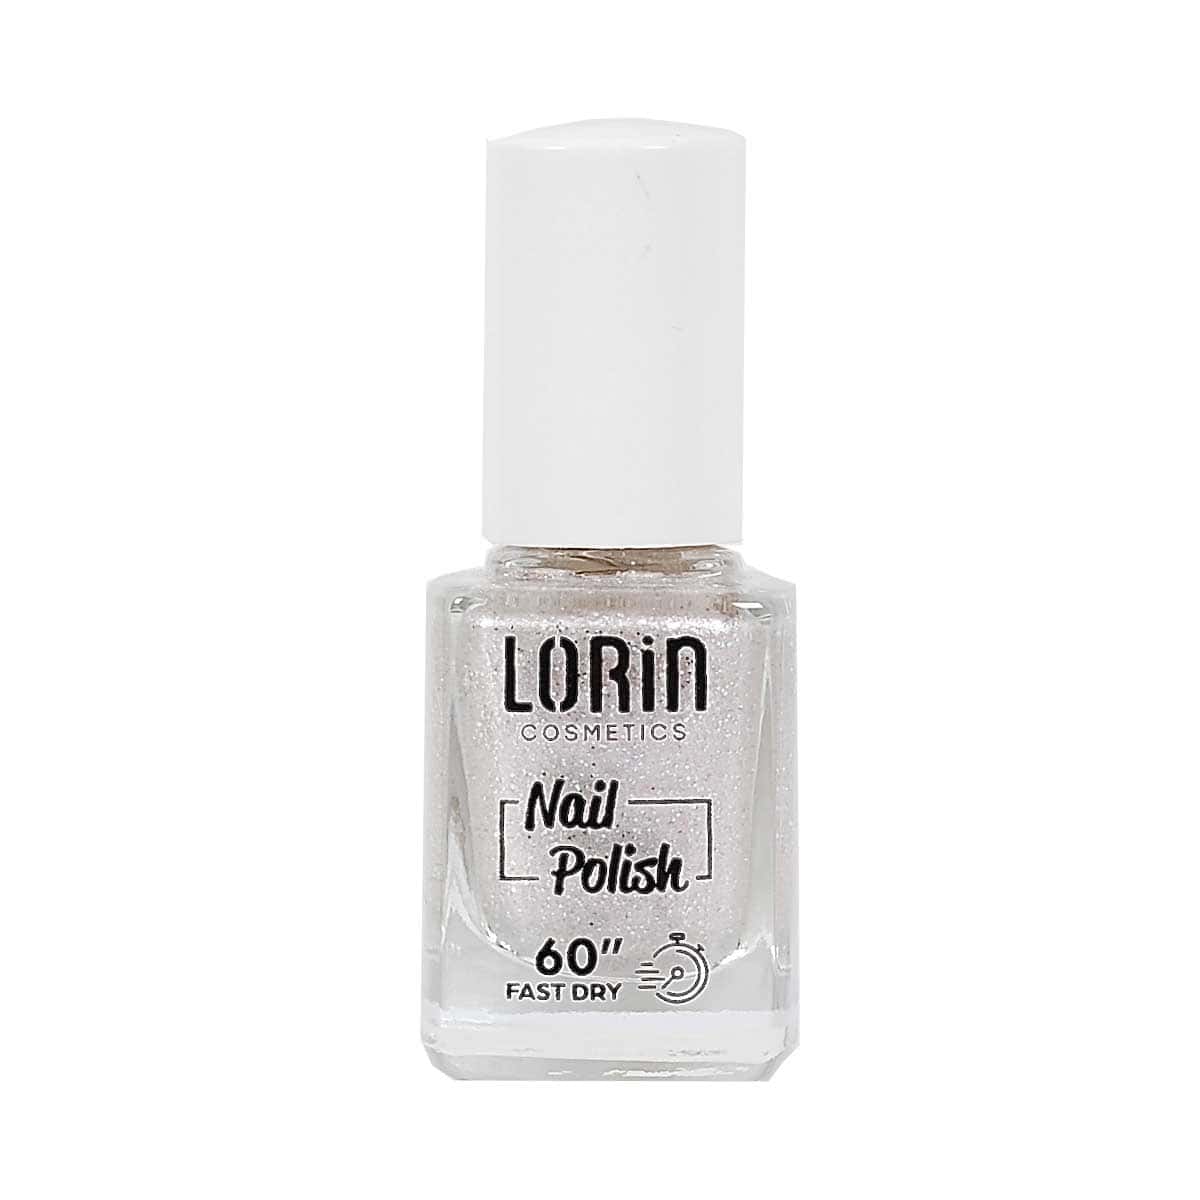 Lorin-Fast-Dry-Nail-Polish-60-No-202-13-ml-5200250722096